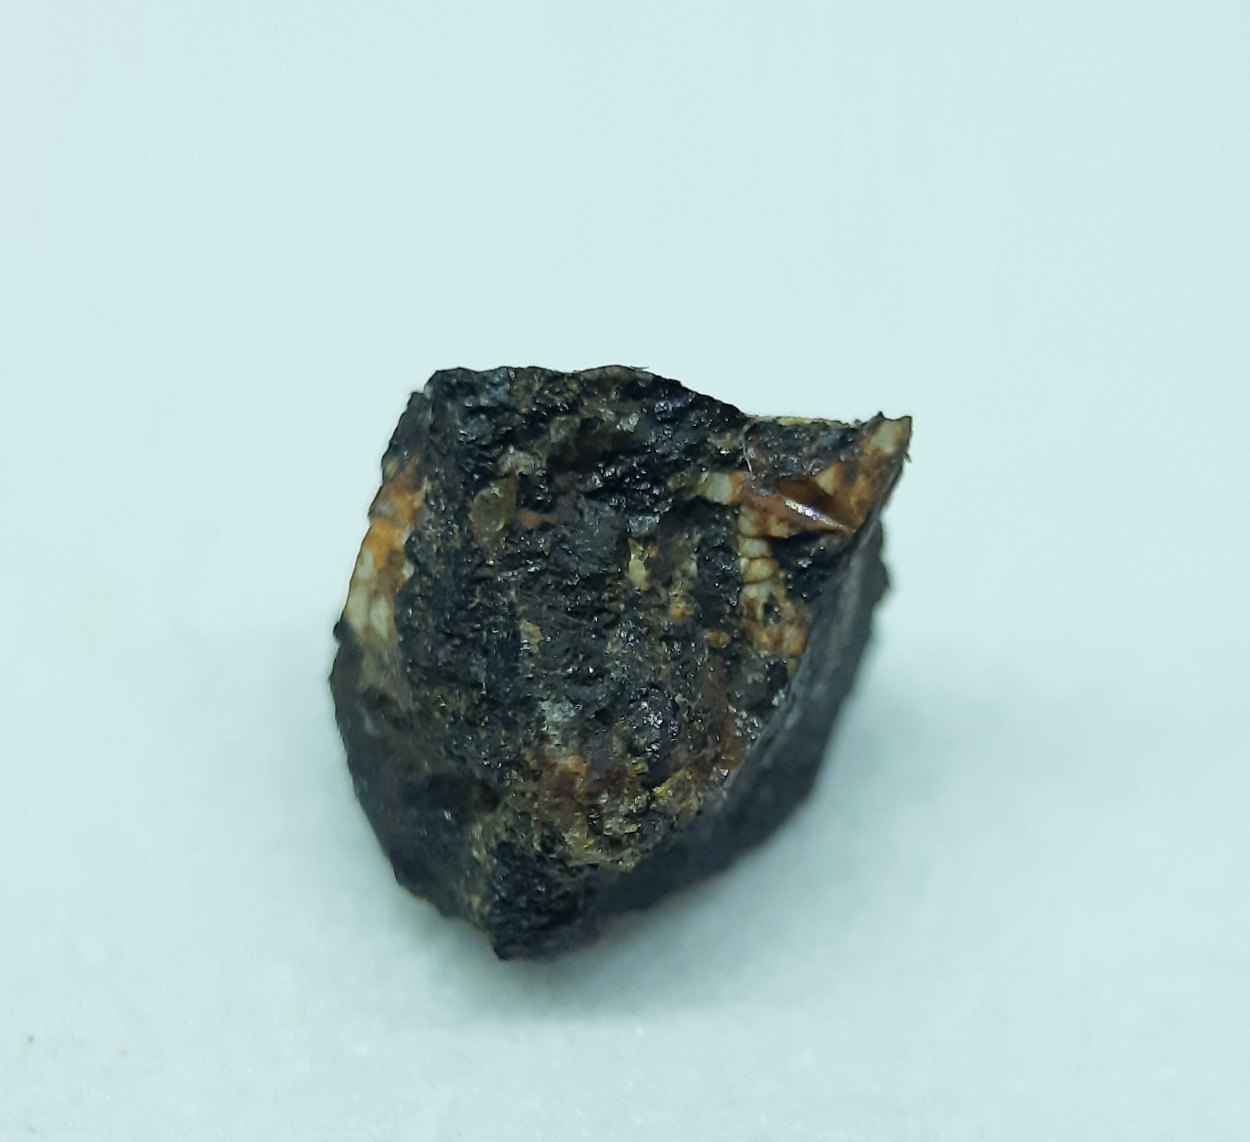 Bastnäsite-(La) Allanite-(La) & Fluorbritholite-(Ce)